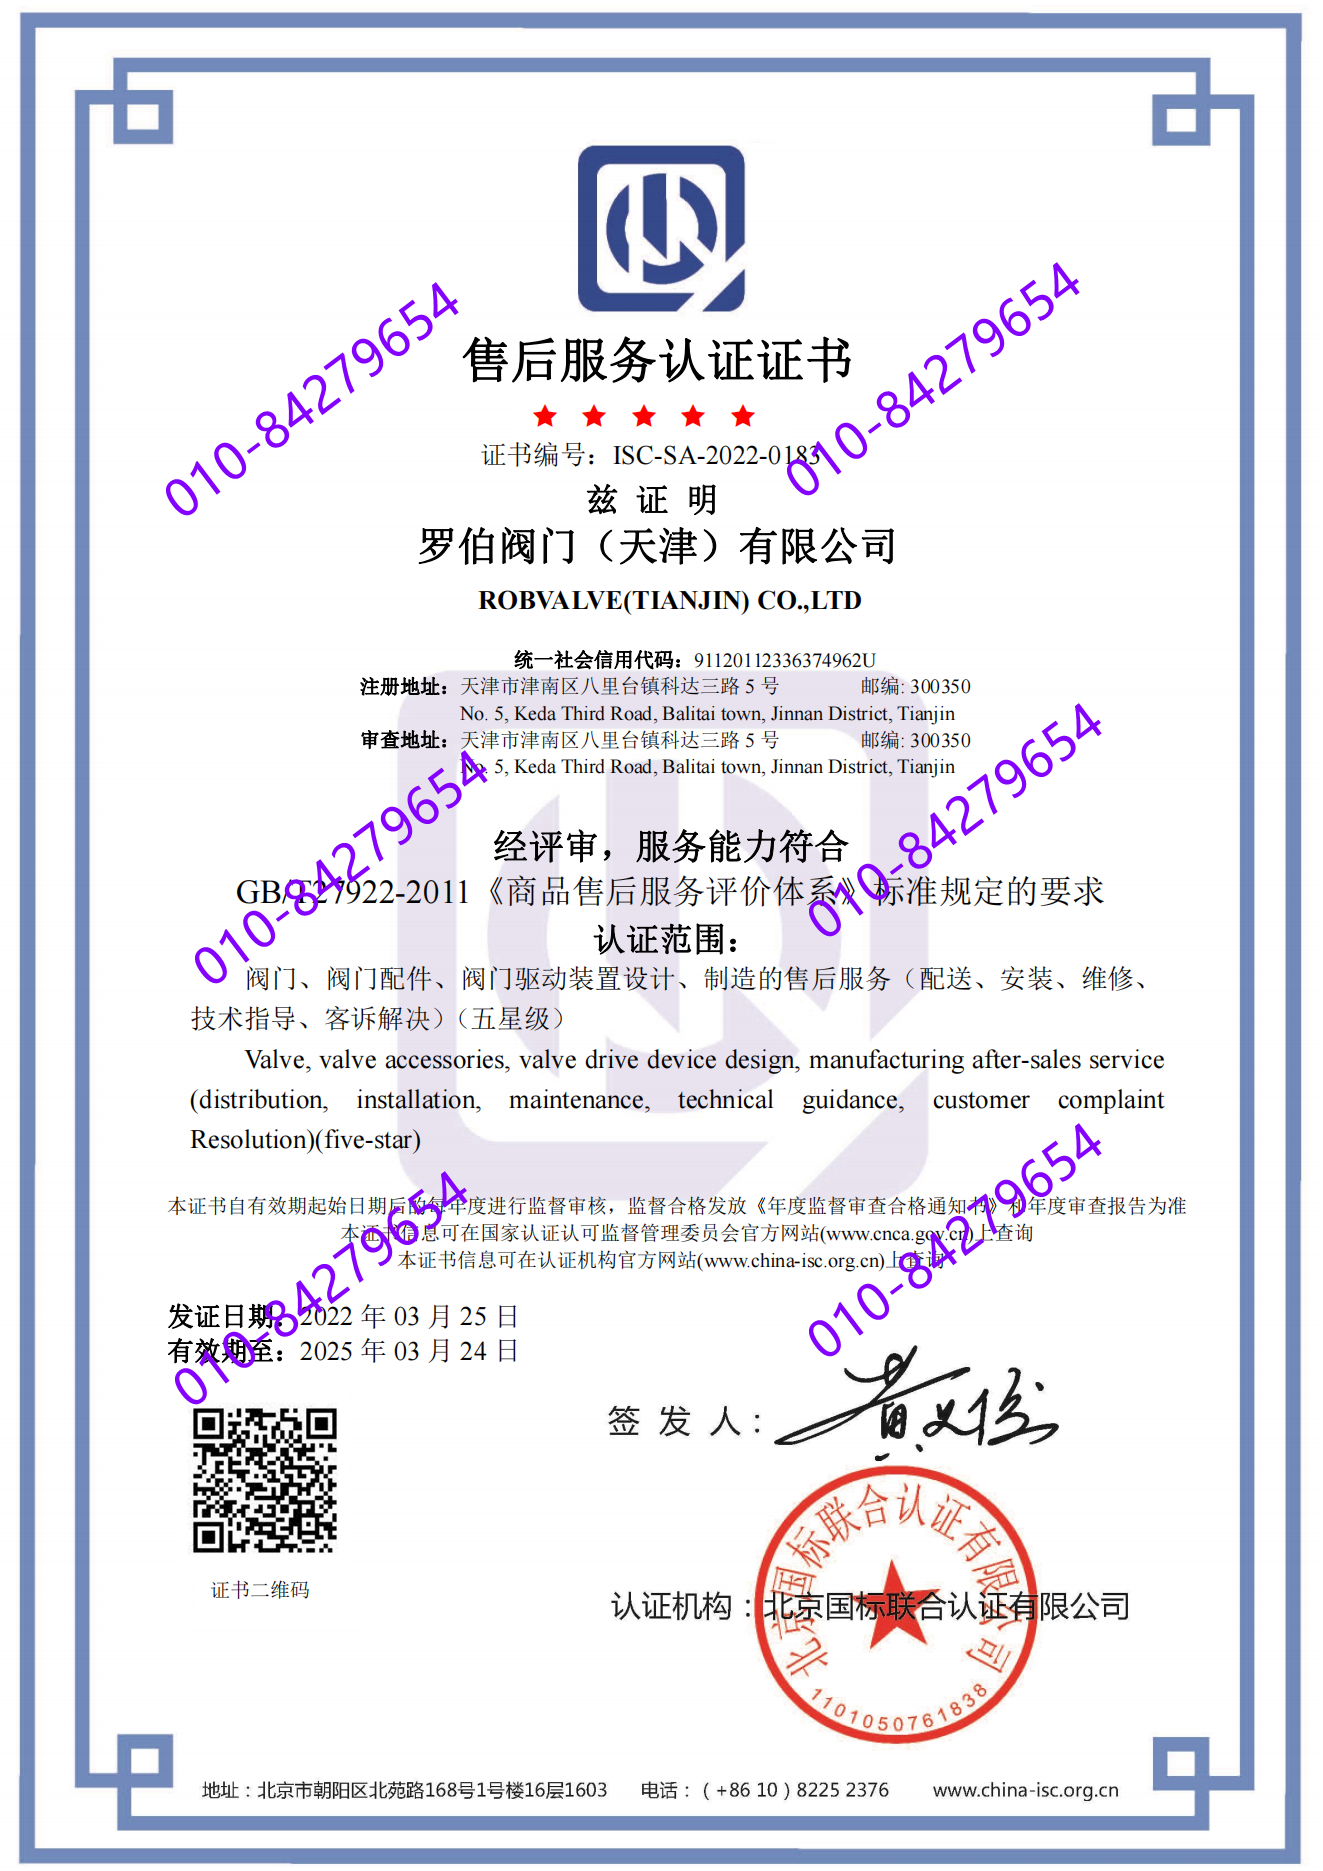 罗伯阀门（天津）有限公司 喜获五星 “售后服务认证证书”